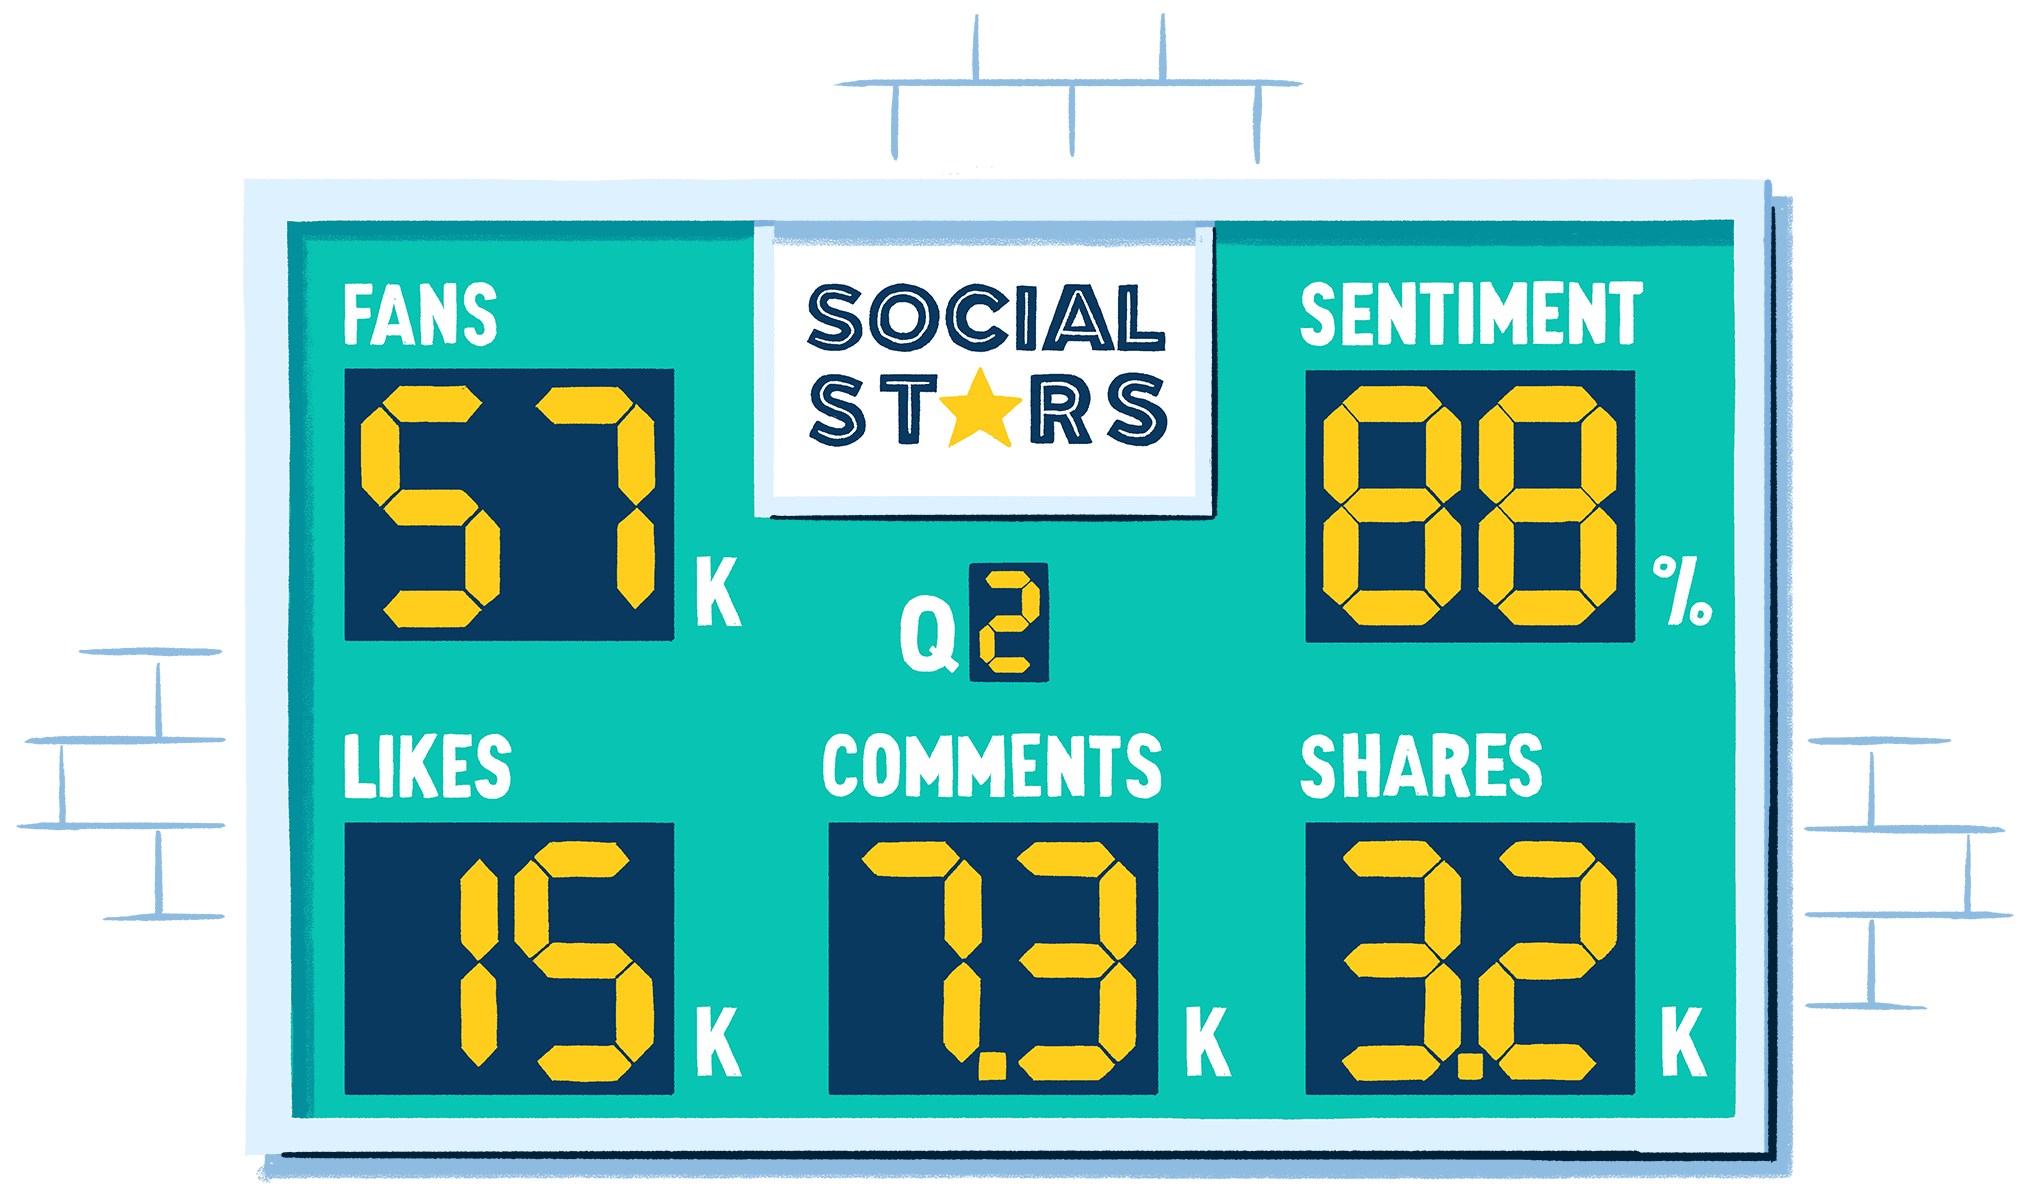 Das Scoreboard zeigt Interaktions-Kennzahlen wie Fans, Likes, Kommentare, Shares und Stimmung.